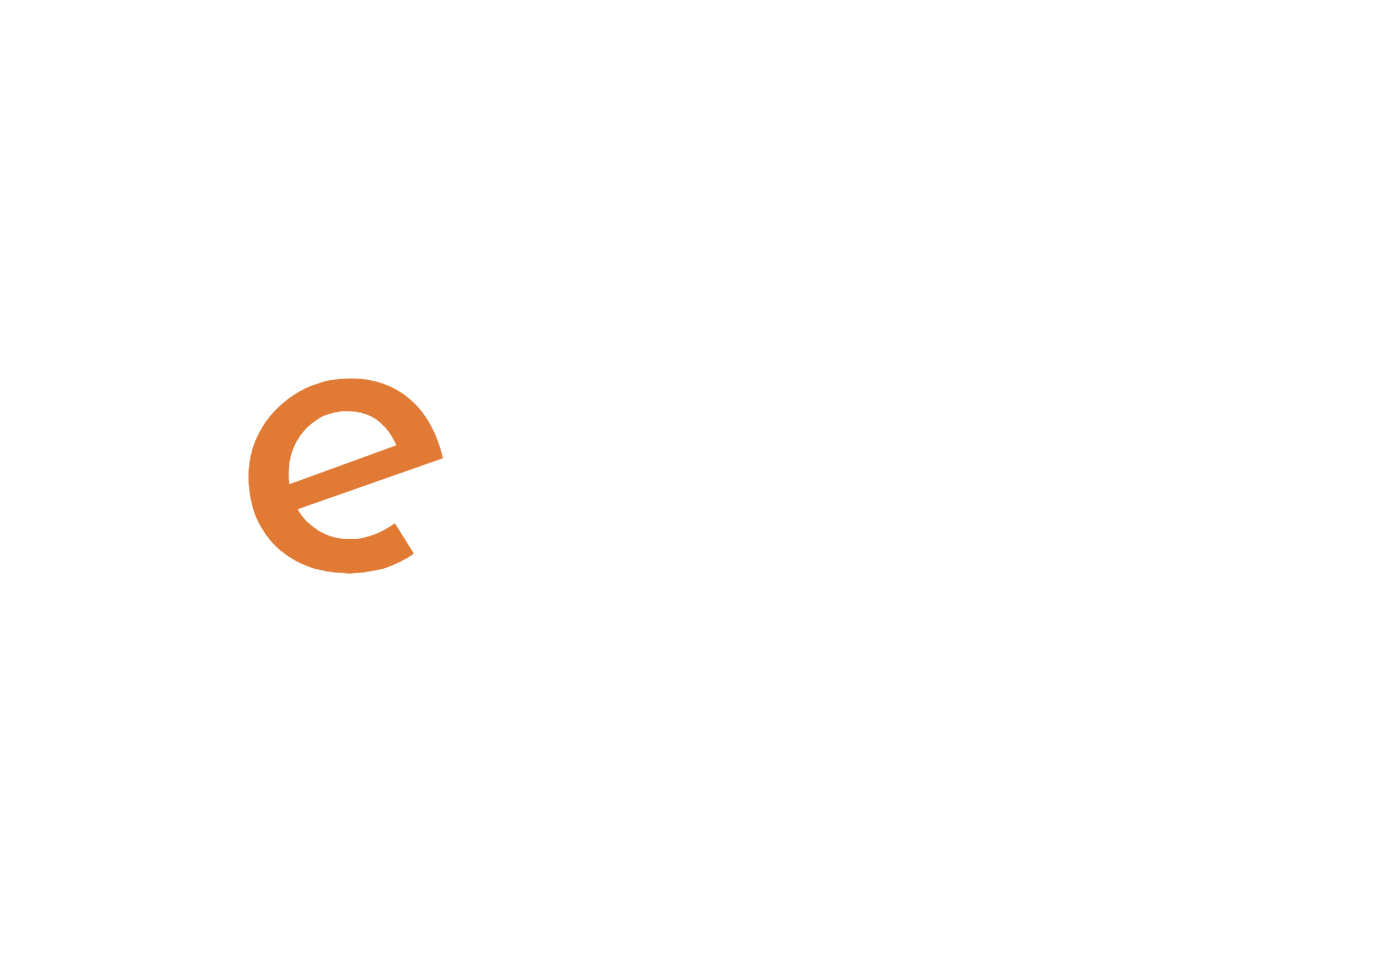 Colegio Mayor Mendaur